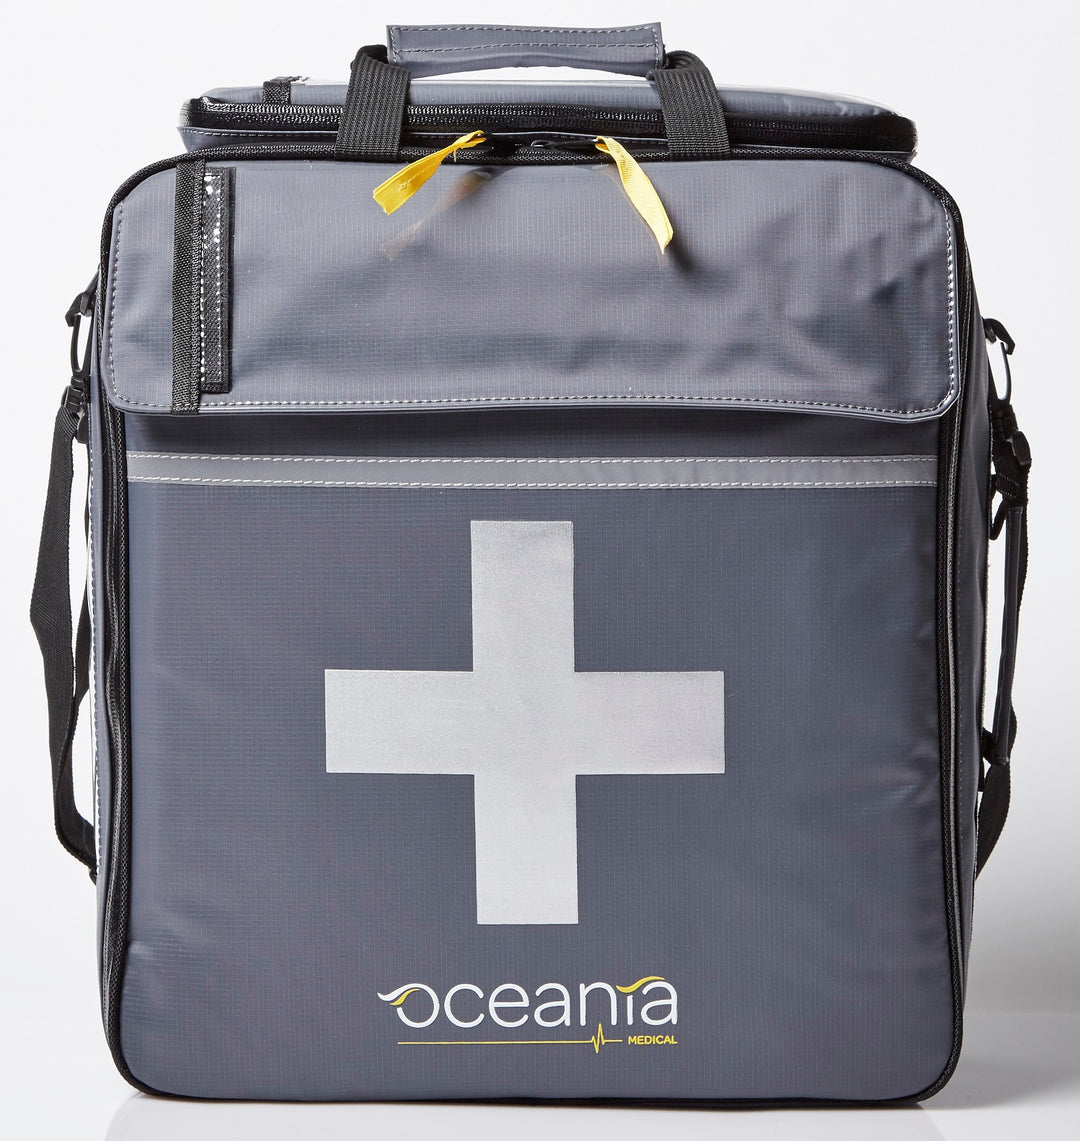 Oceania Medical Trauma Bag